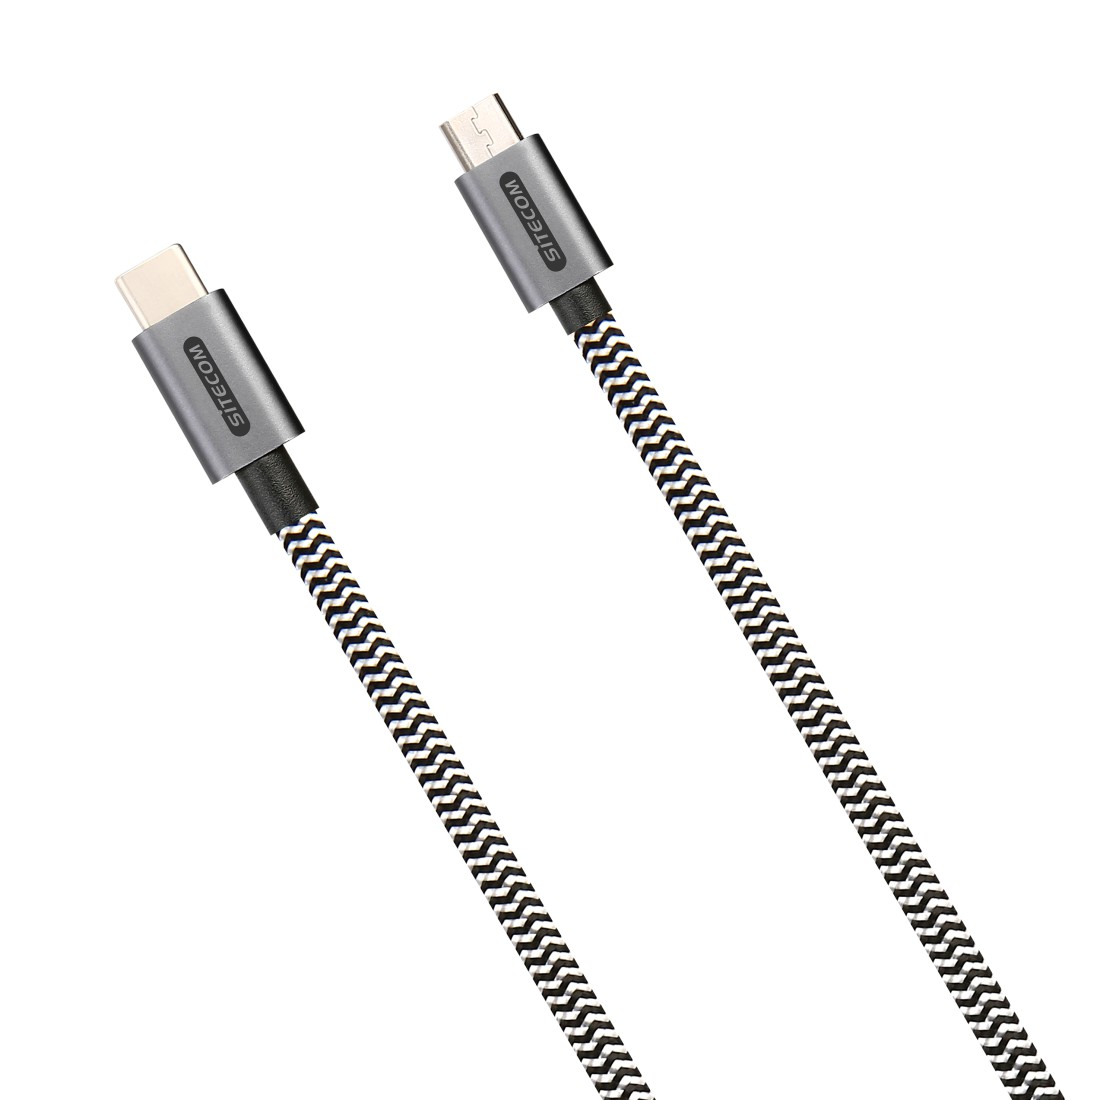 Weiß/Schwarz USB Kabel, Micro CA-035 SITECOM